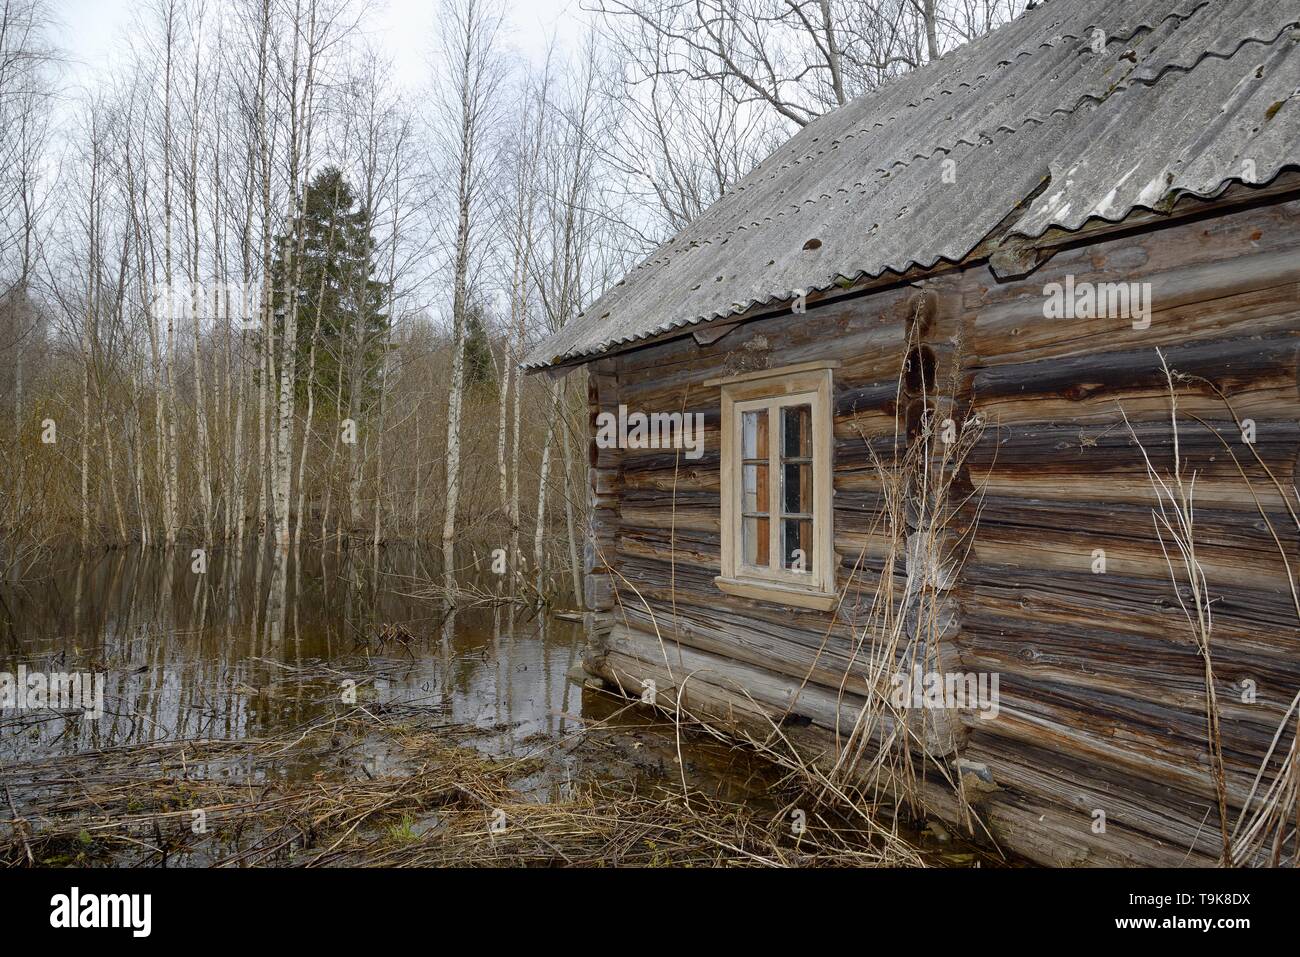 Abandonnés, abandonnés à woodland cottage inondés par le castor d'Eurasie (Castor fiber) l'endiguement d'une rivière à proximité, avec plusieurs arbres a récemment réduit par eux Banque D'Images